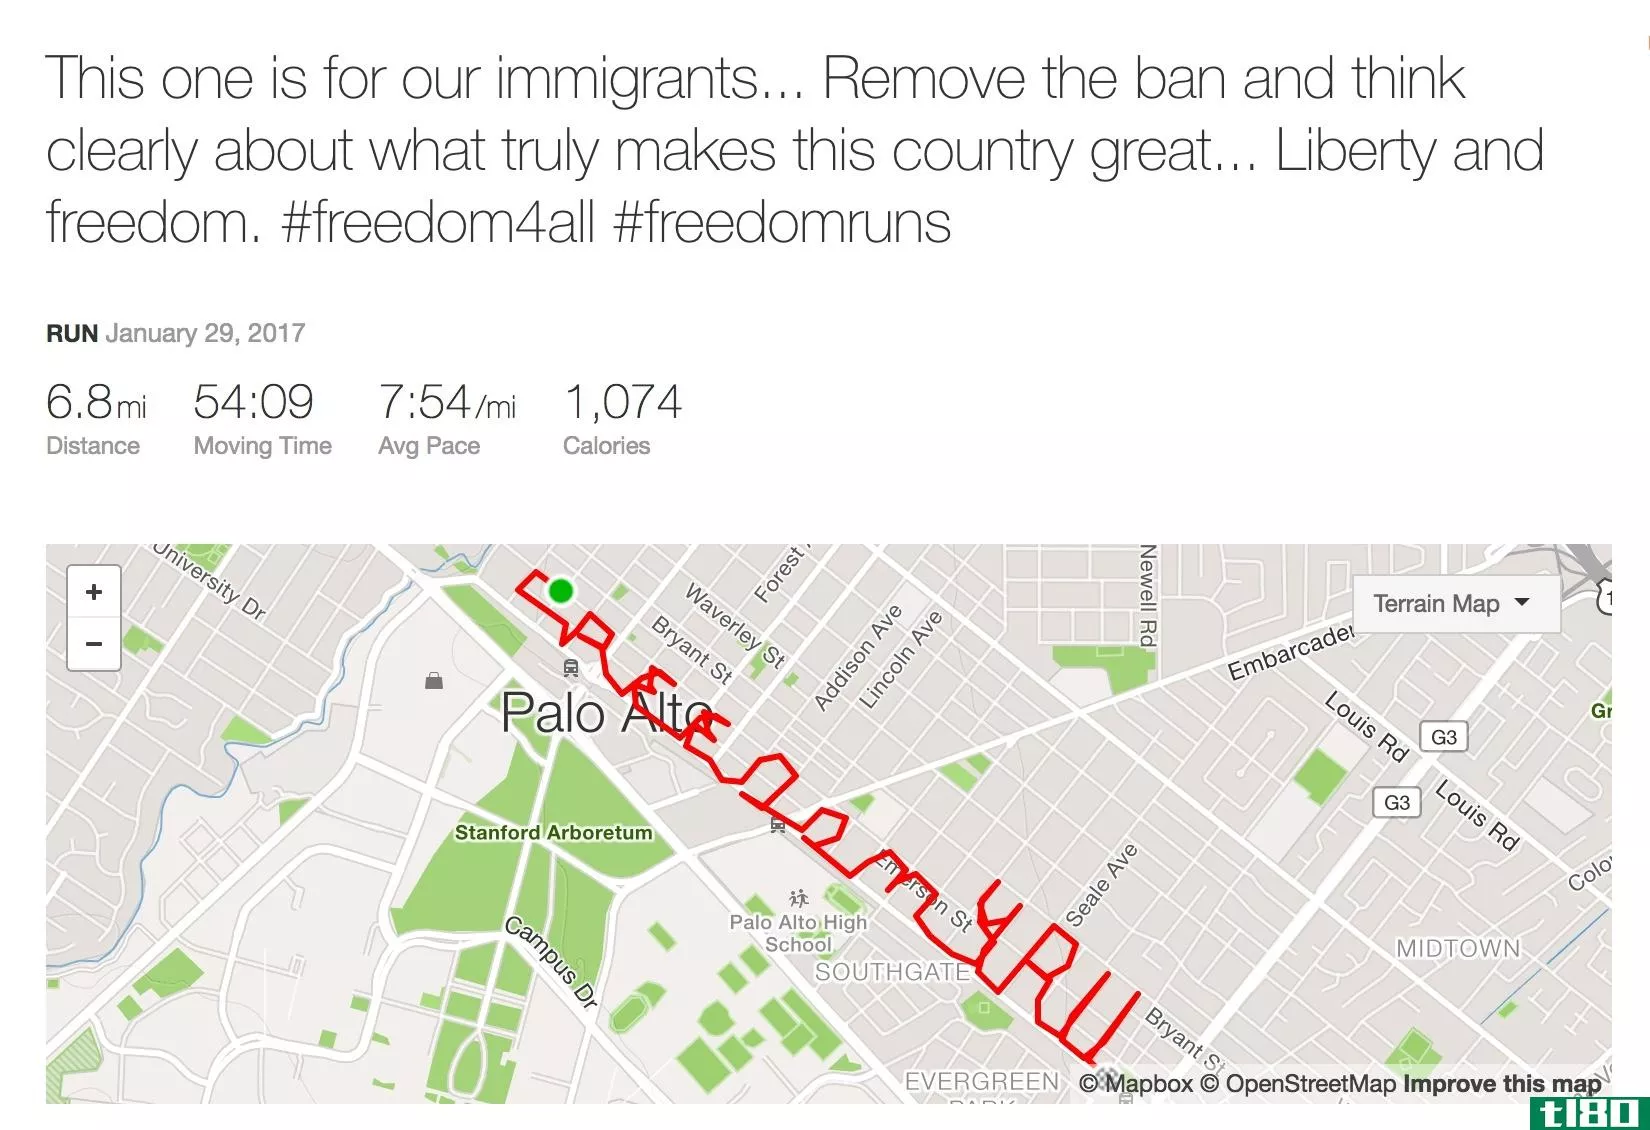 斯特拉瓦的首席执行官通过运营一条拼写为“freedom4all”的路线，表示对移民的声援